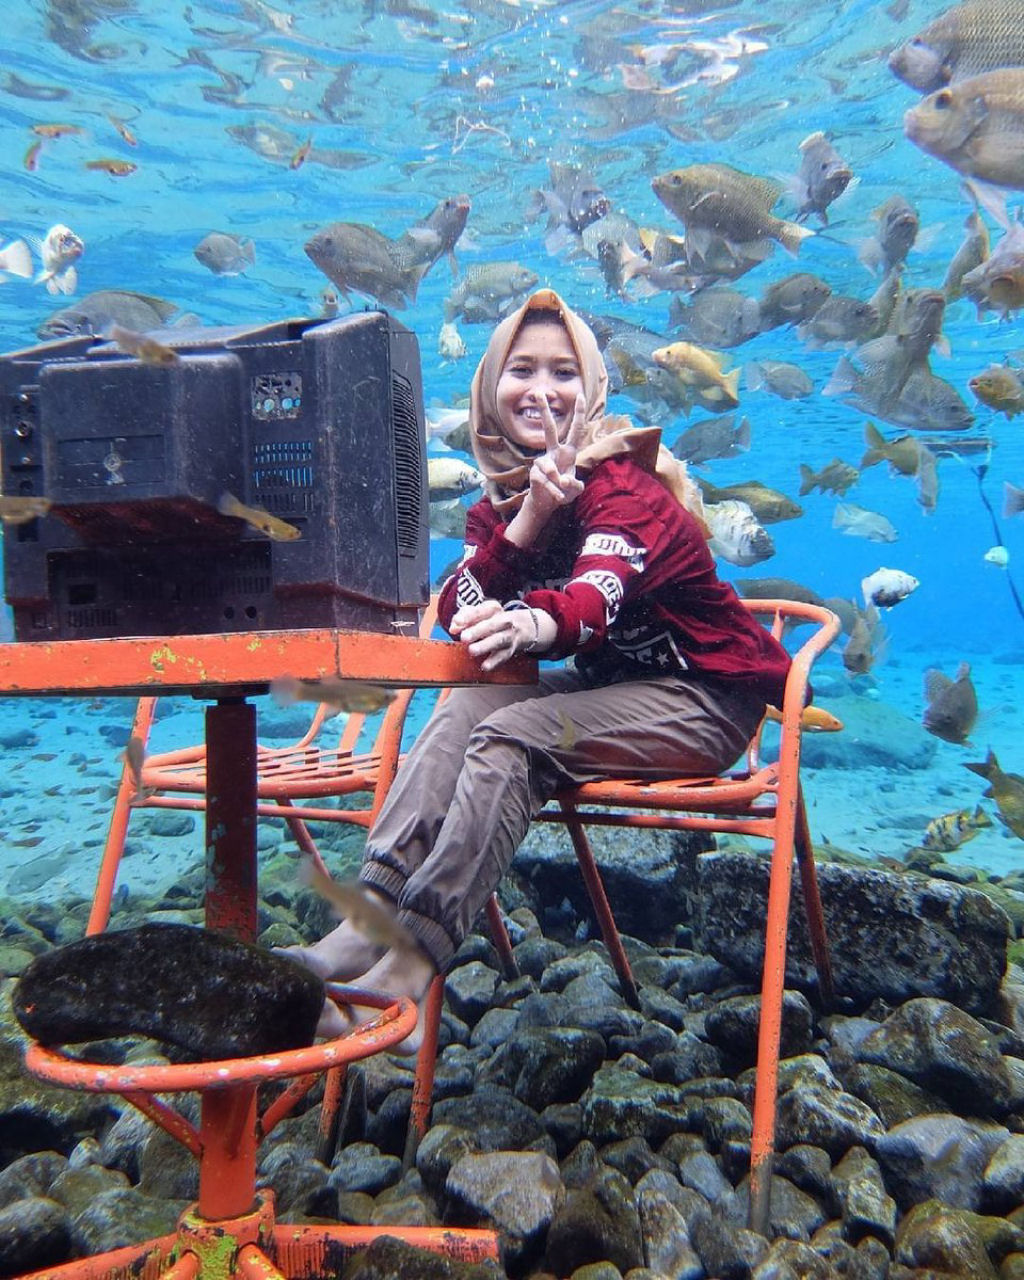 Este lago de uma vila na Indonsia se tornou uma mania de selfies subaquticas 04